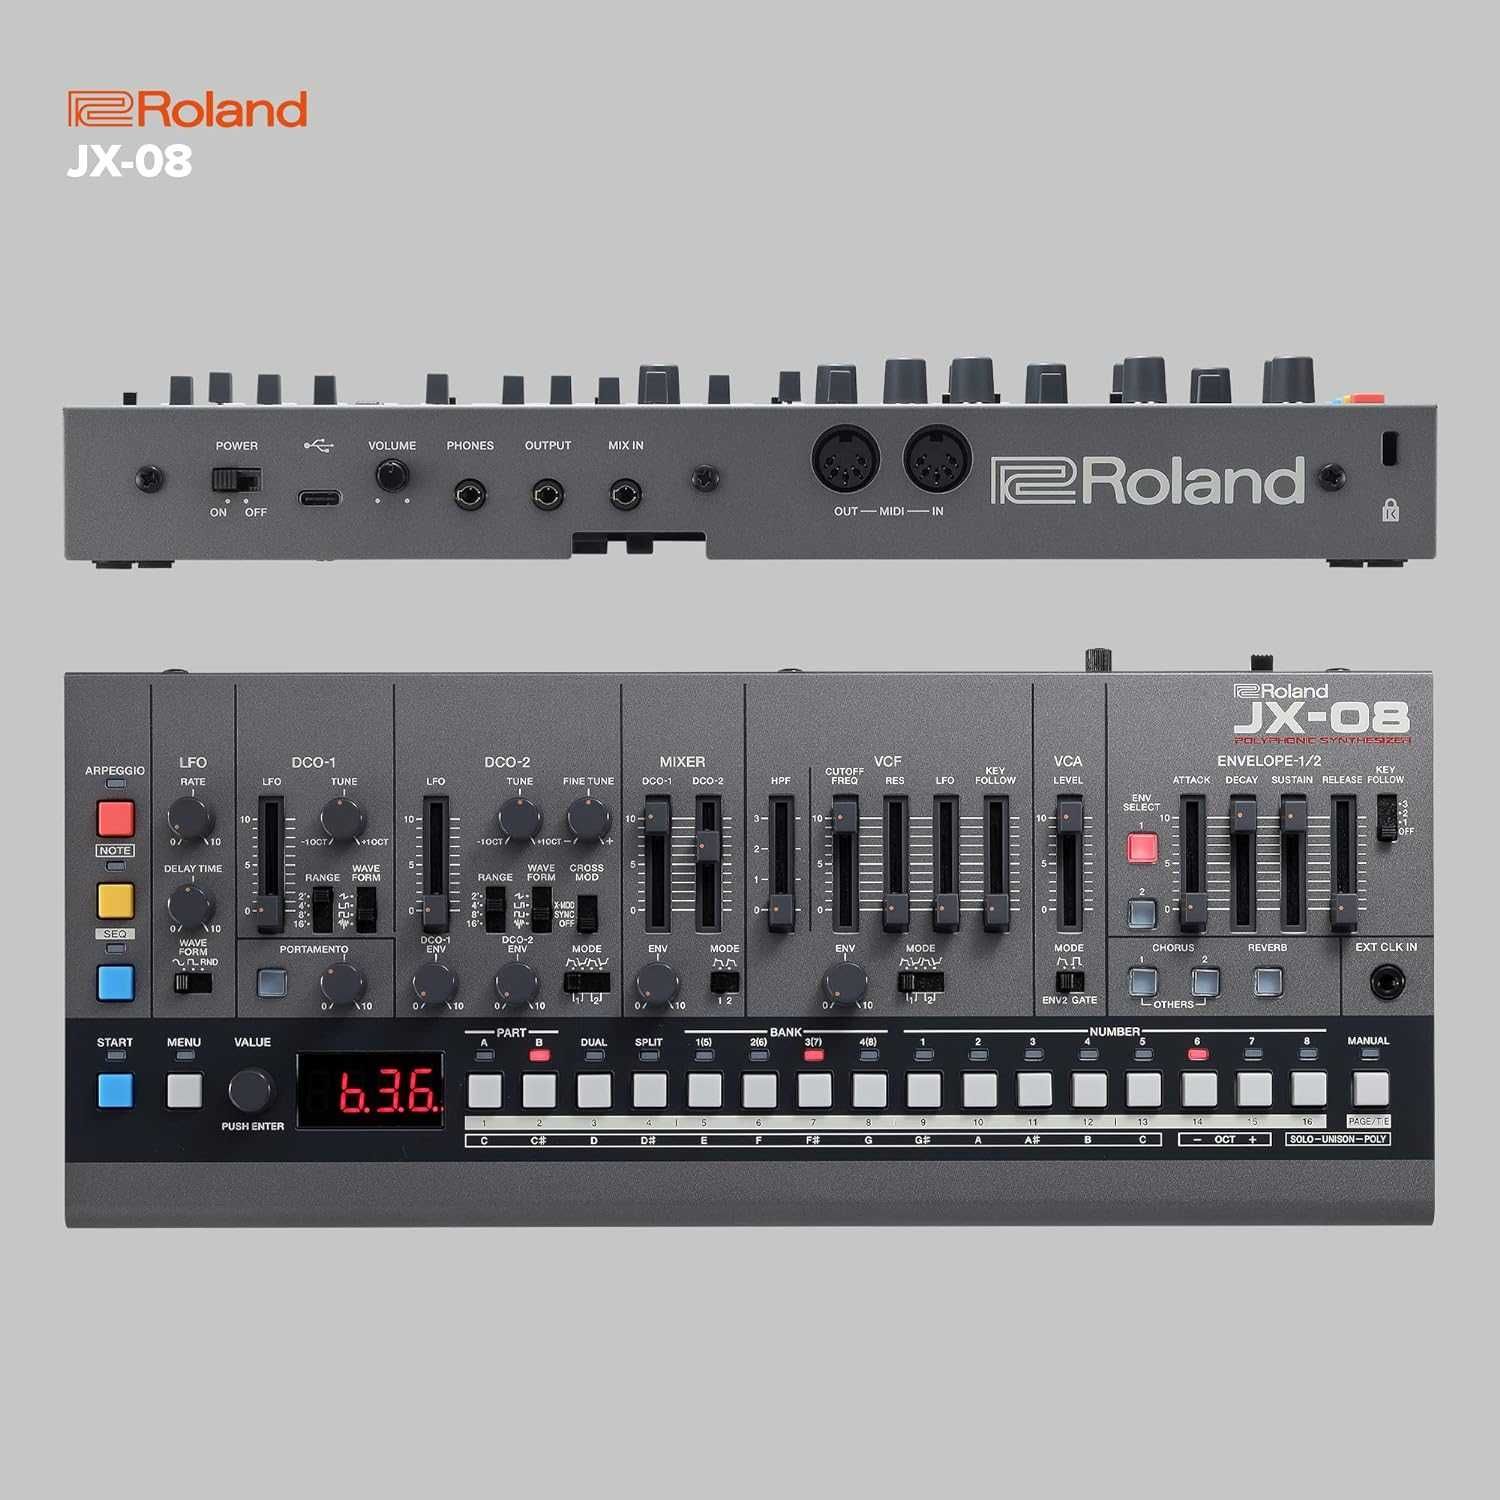 Roland JX-08 moduł dźwiękowy, brzmieniowy, syntezator. Nowy. Okazja GW